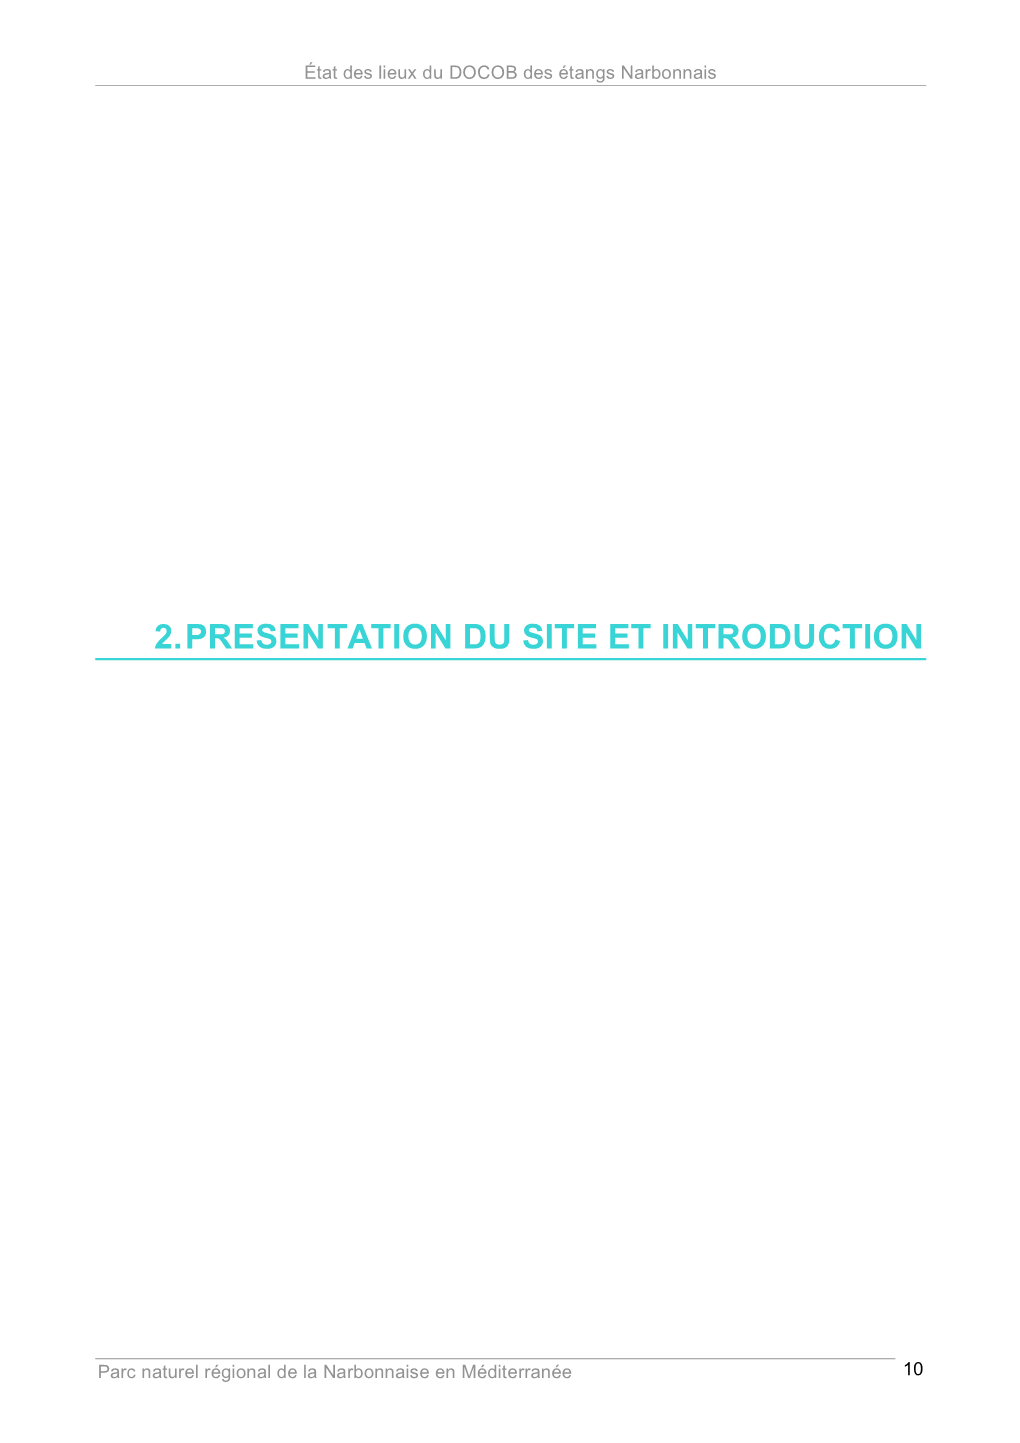 2. Presentation Du Site Et Introduction